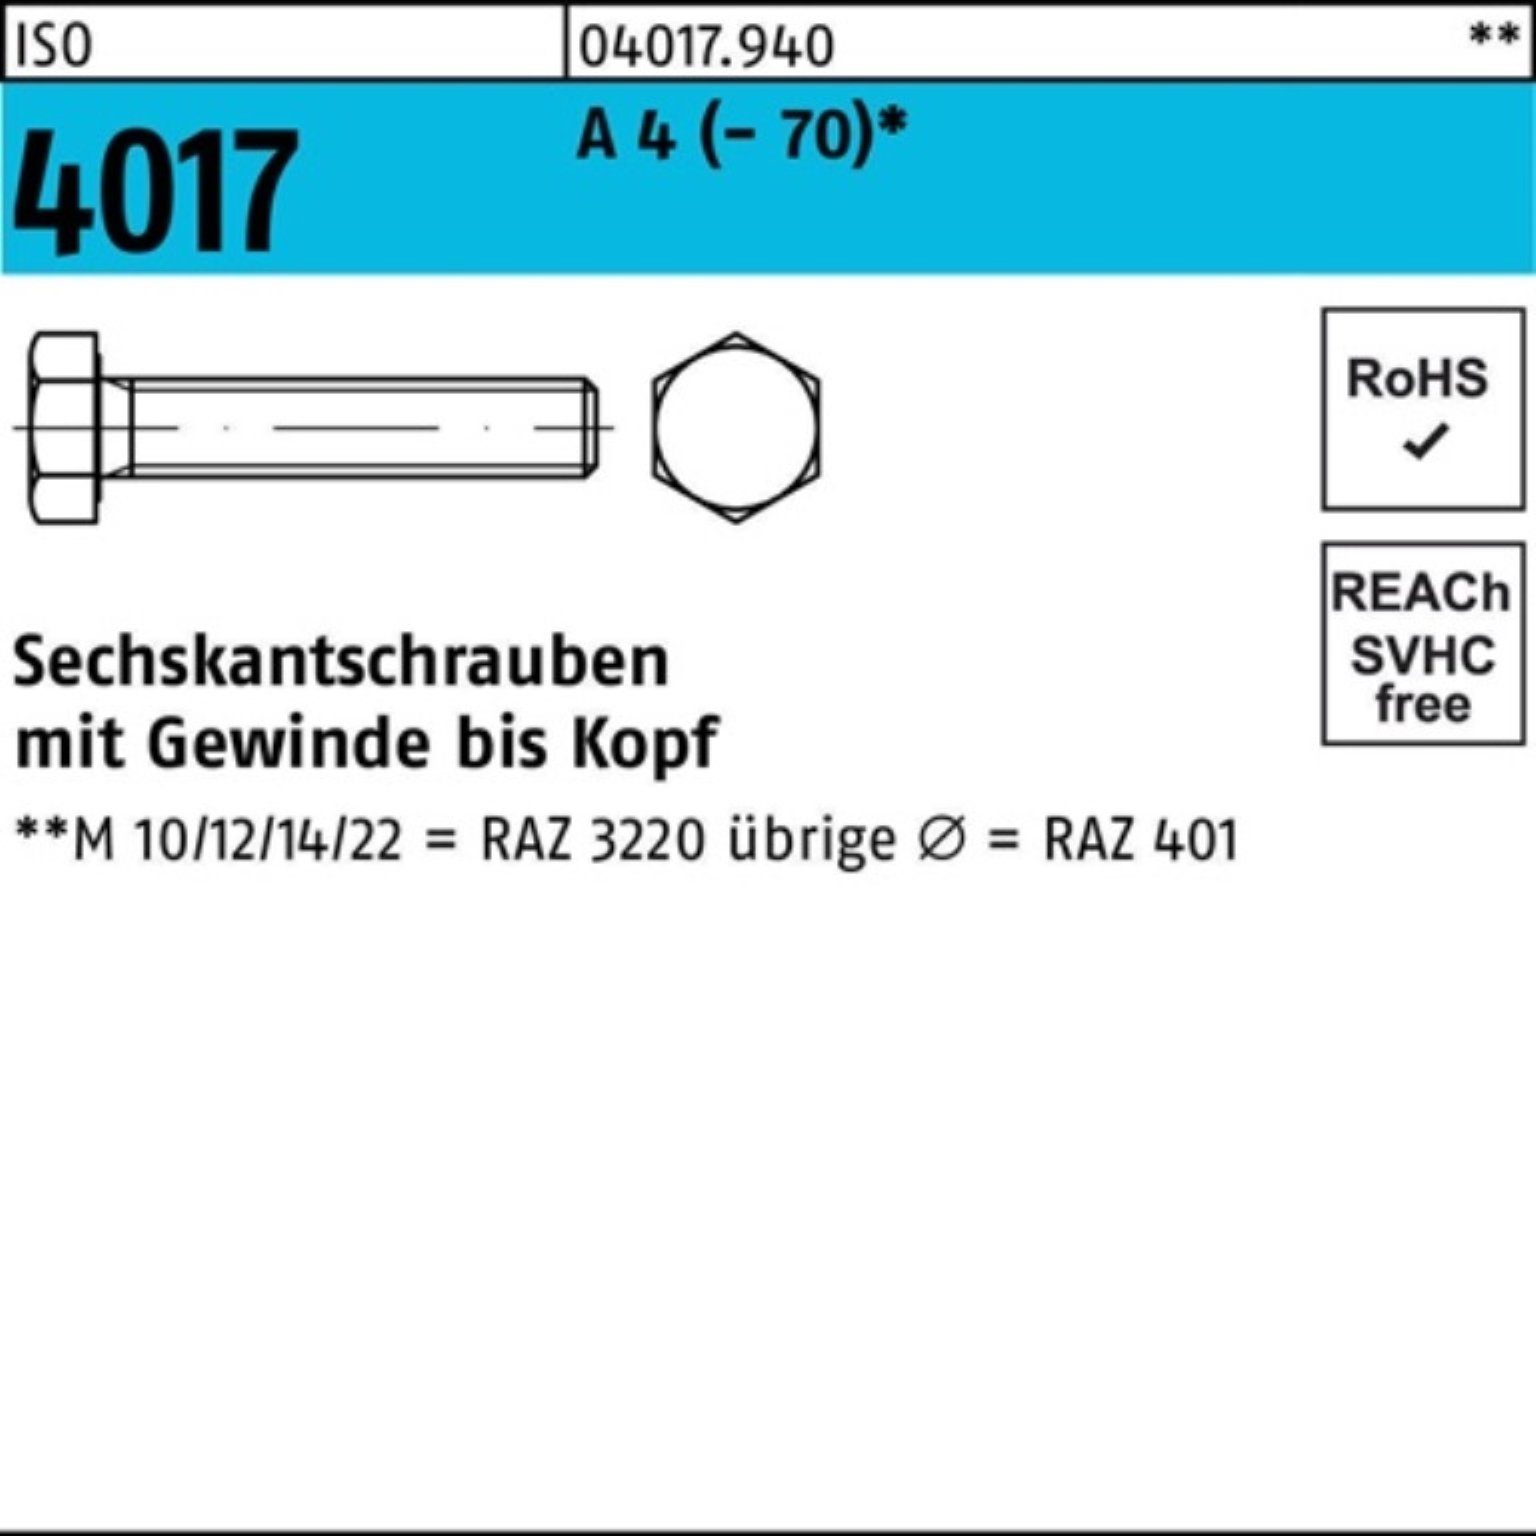 Pack 4 10 Stück Sechskantschraube Bufab A Sechskantschraube 200er M8x (70) ISO 4017 VG 200